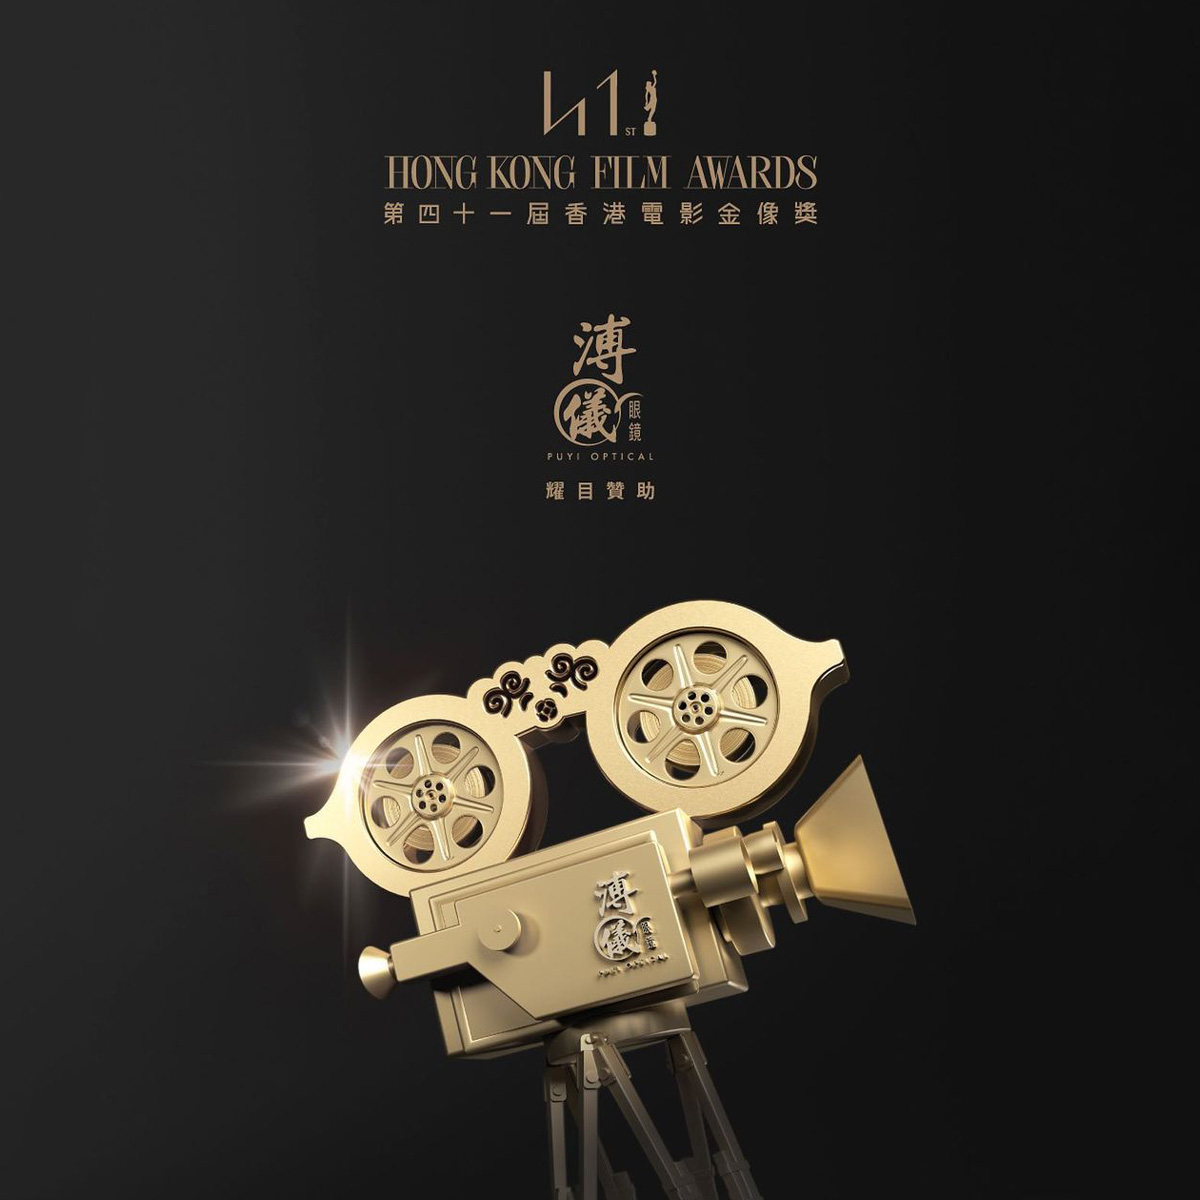 溥儀眼鏡耀目贊助「第41屆香港電影金像獎」  